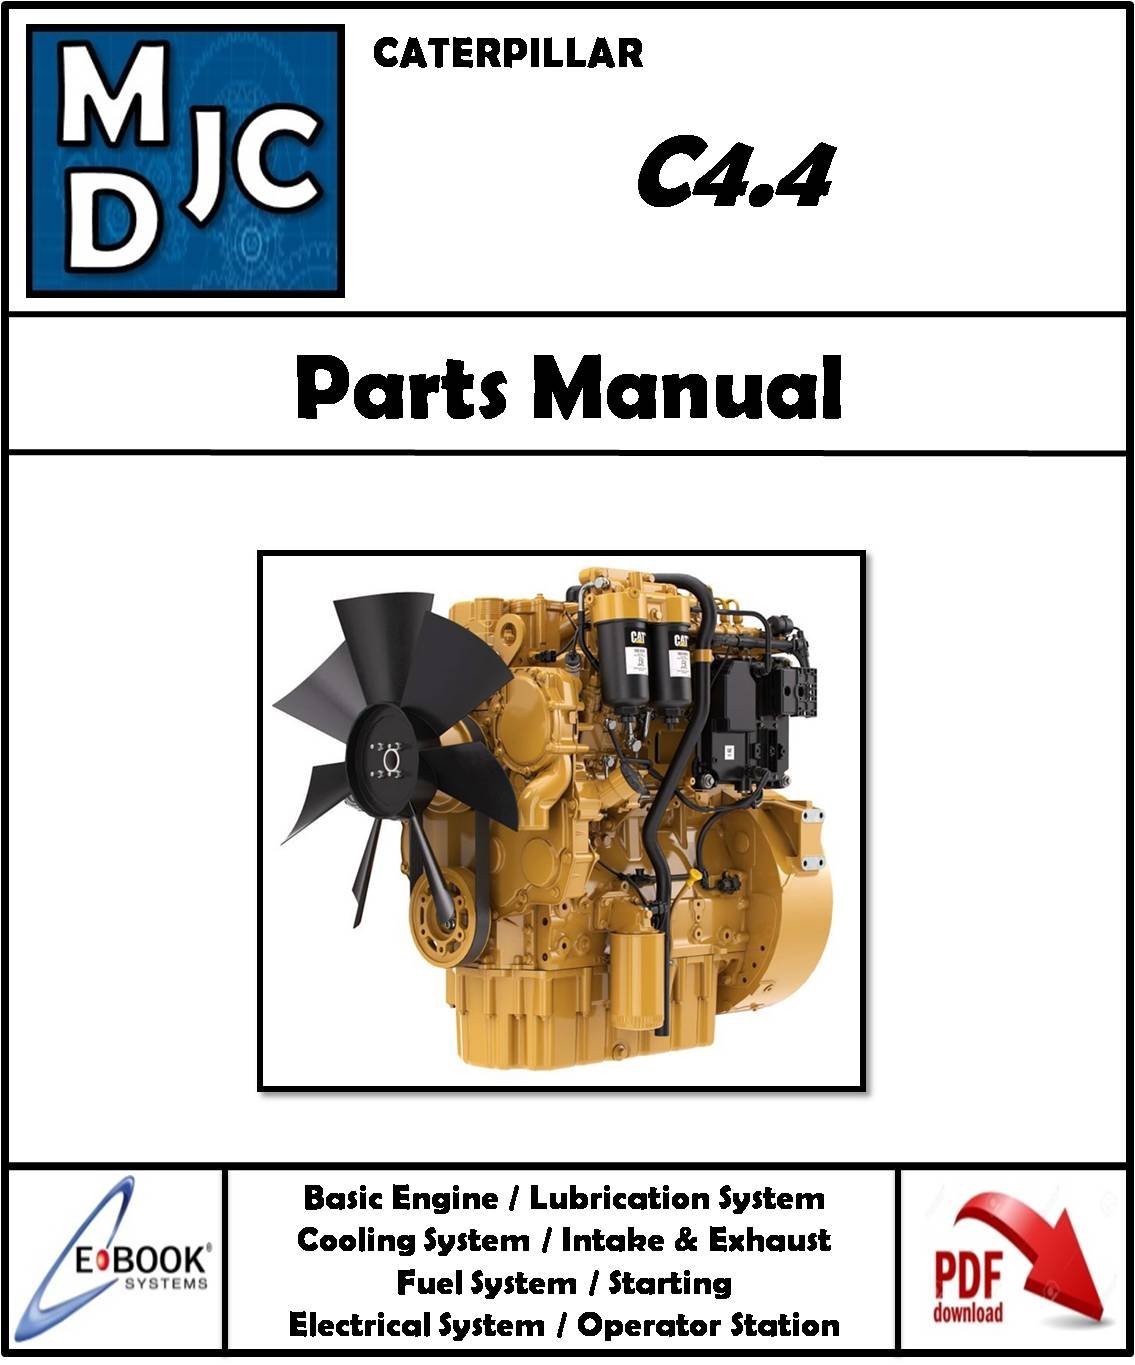 Catalogo de Partes Motor Caterpillar  C4.4